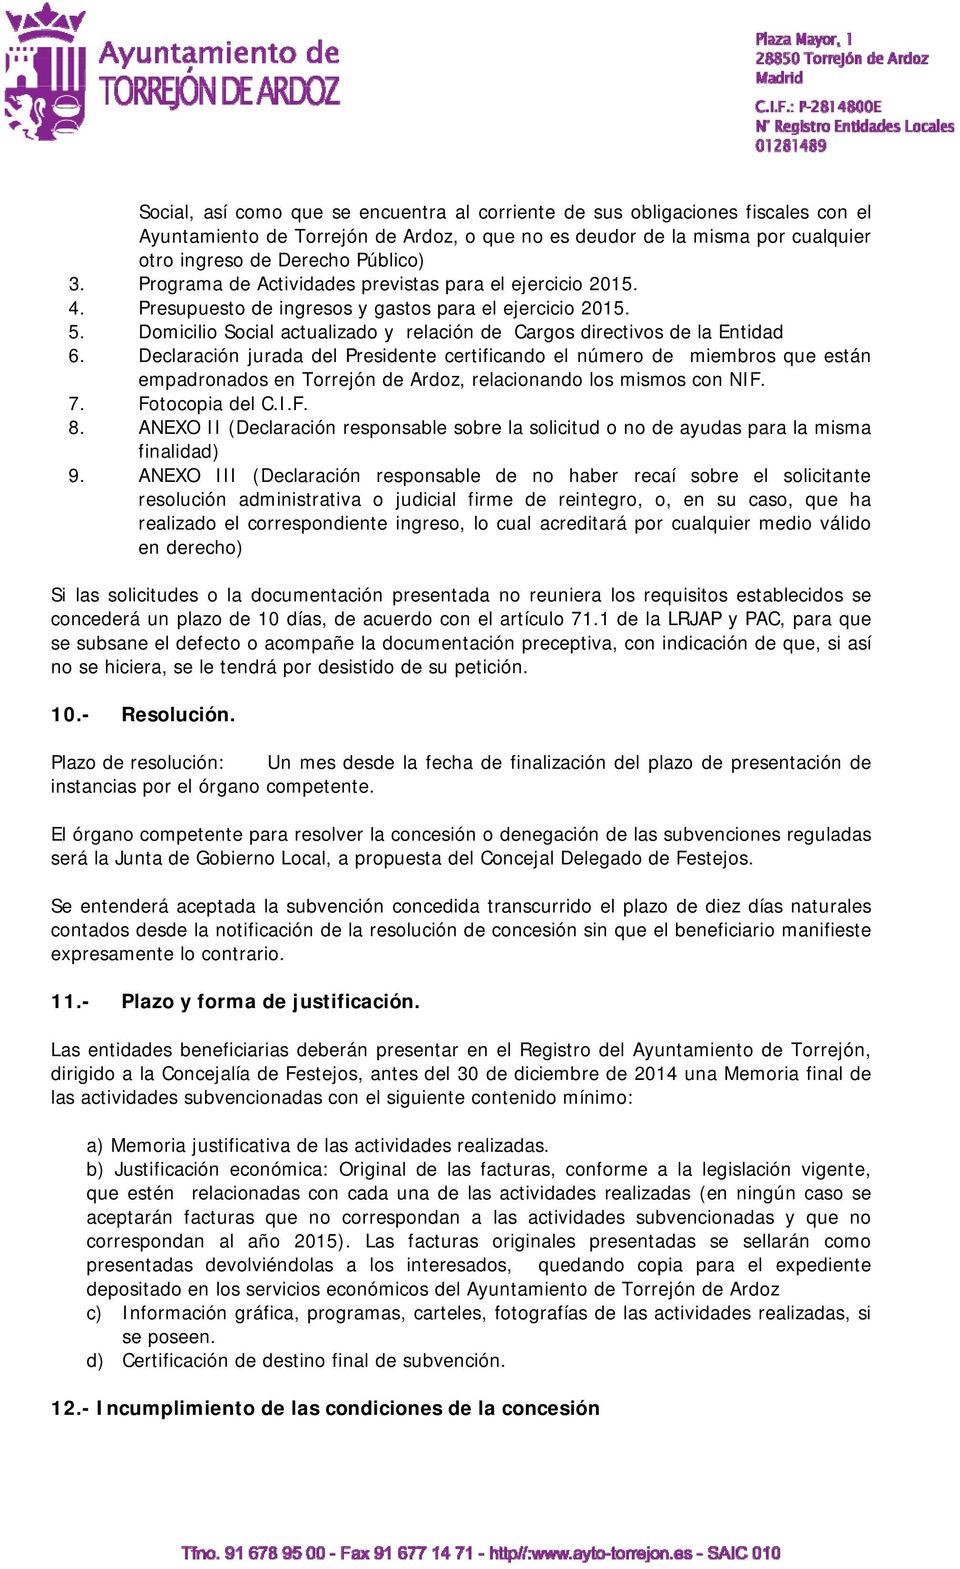 Declaración jurada del Presidente certificando el número de miembros que están empadronados en Torrejón de Ardoz, relacionando los mismos con NIF. 7. Fotocopia del C.I.F. 8.